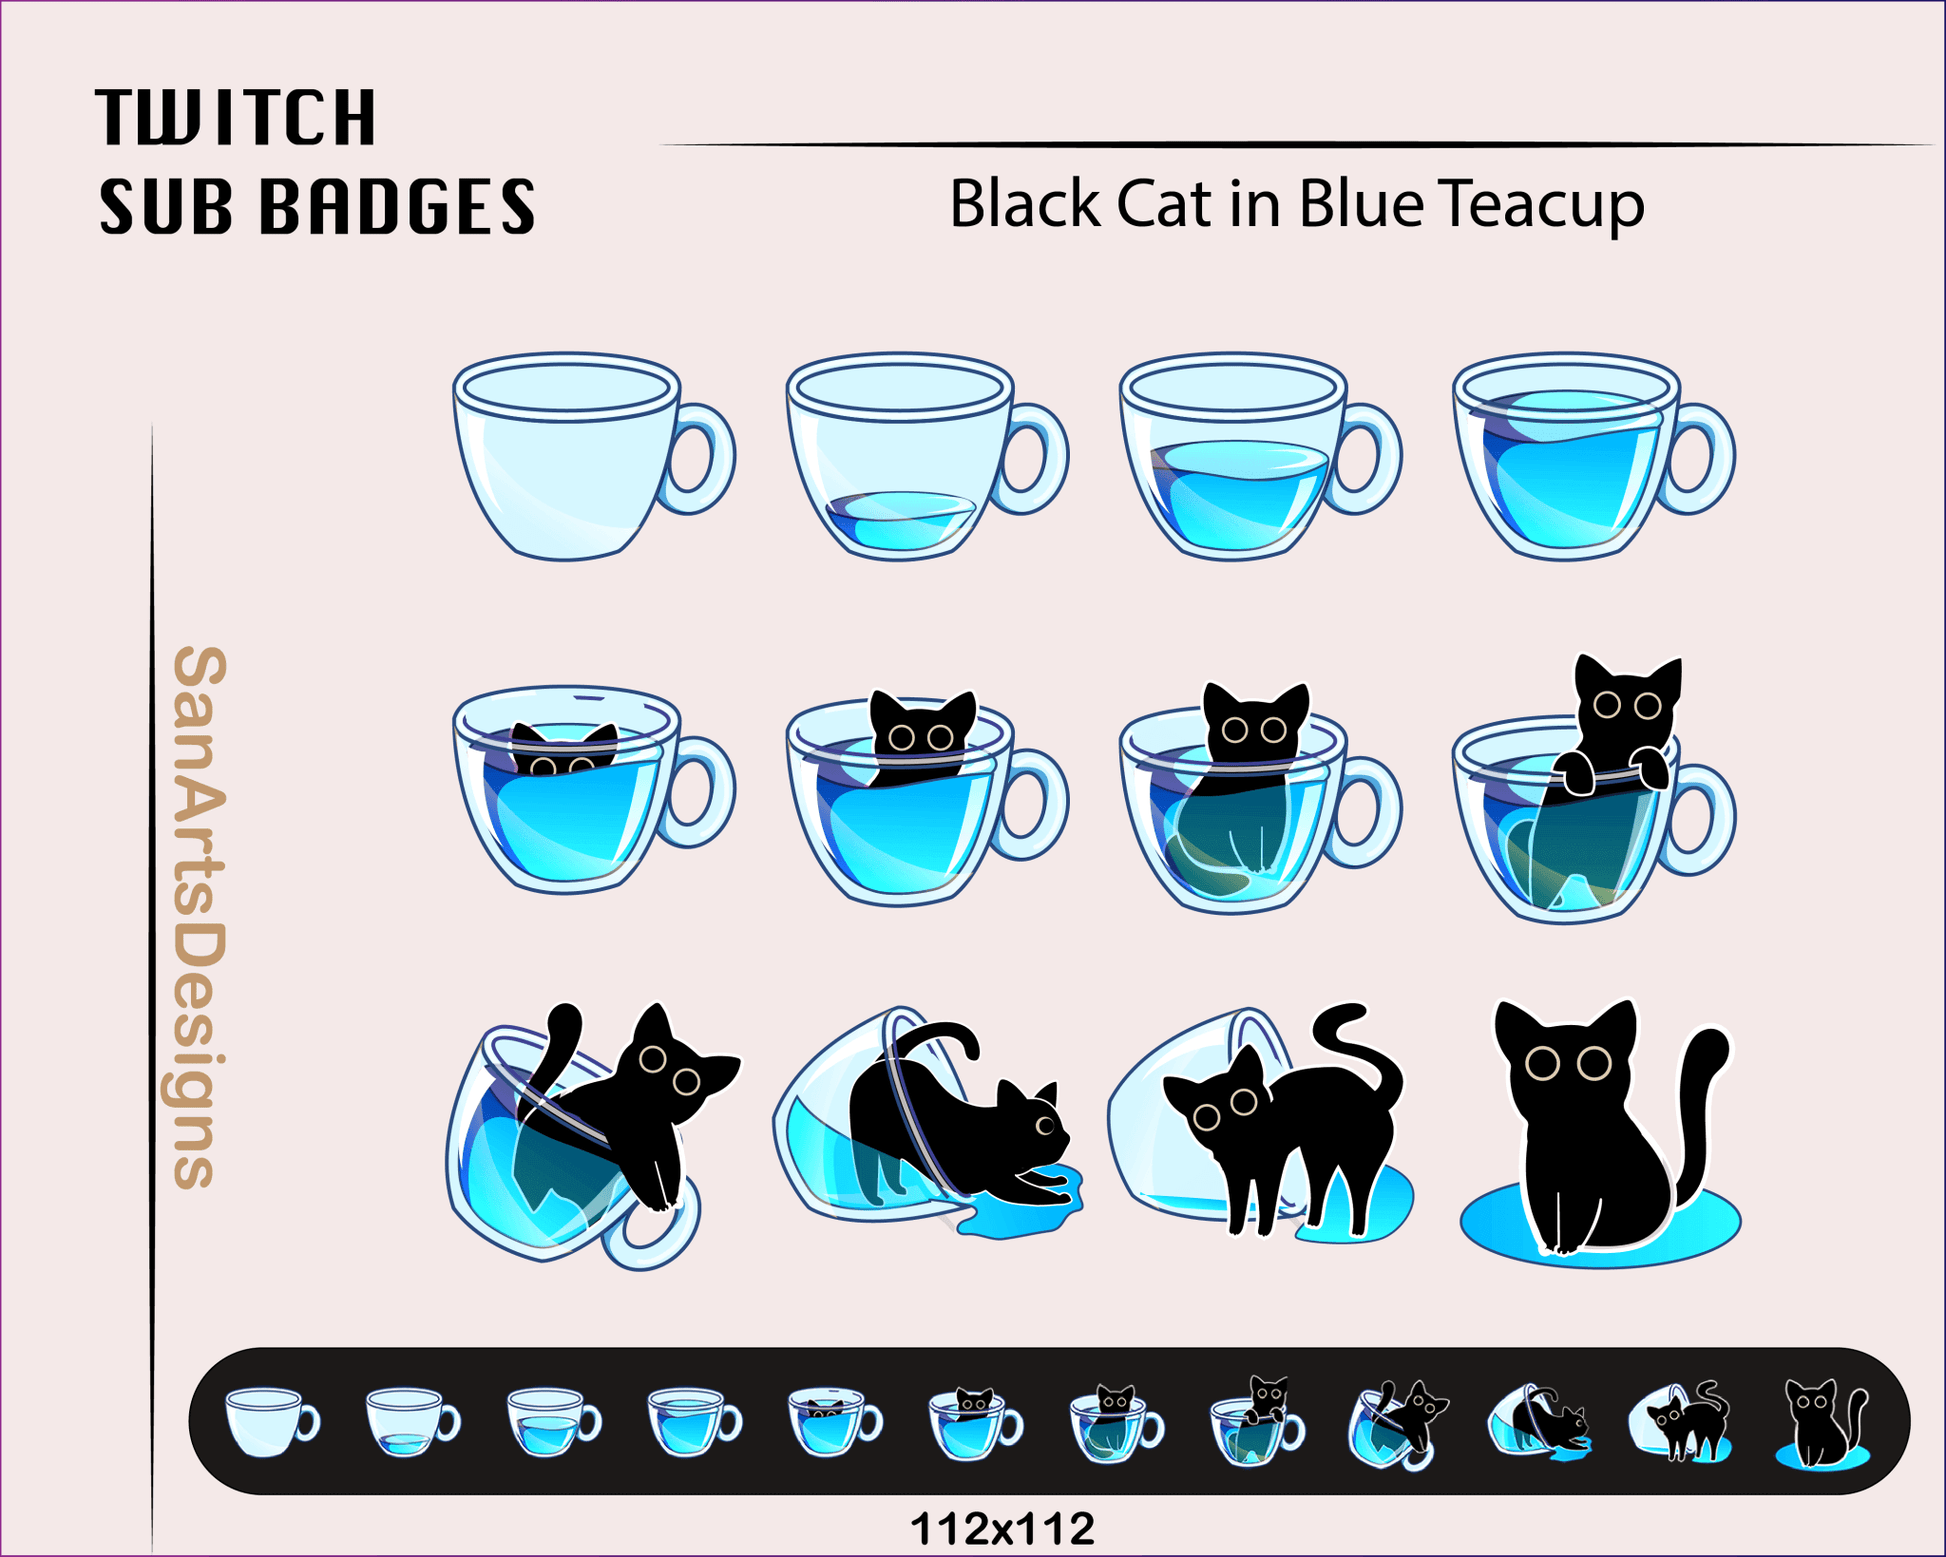 Black Cat in Teacup Twitch Sub Badges - Badges - Stream K-Arts